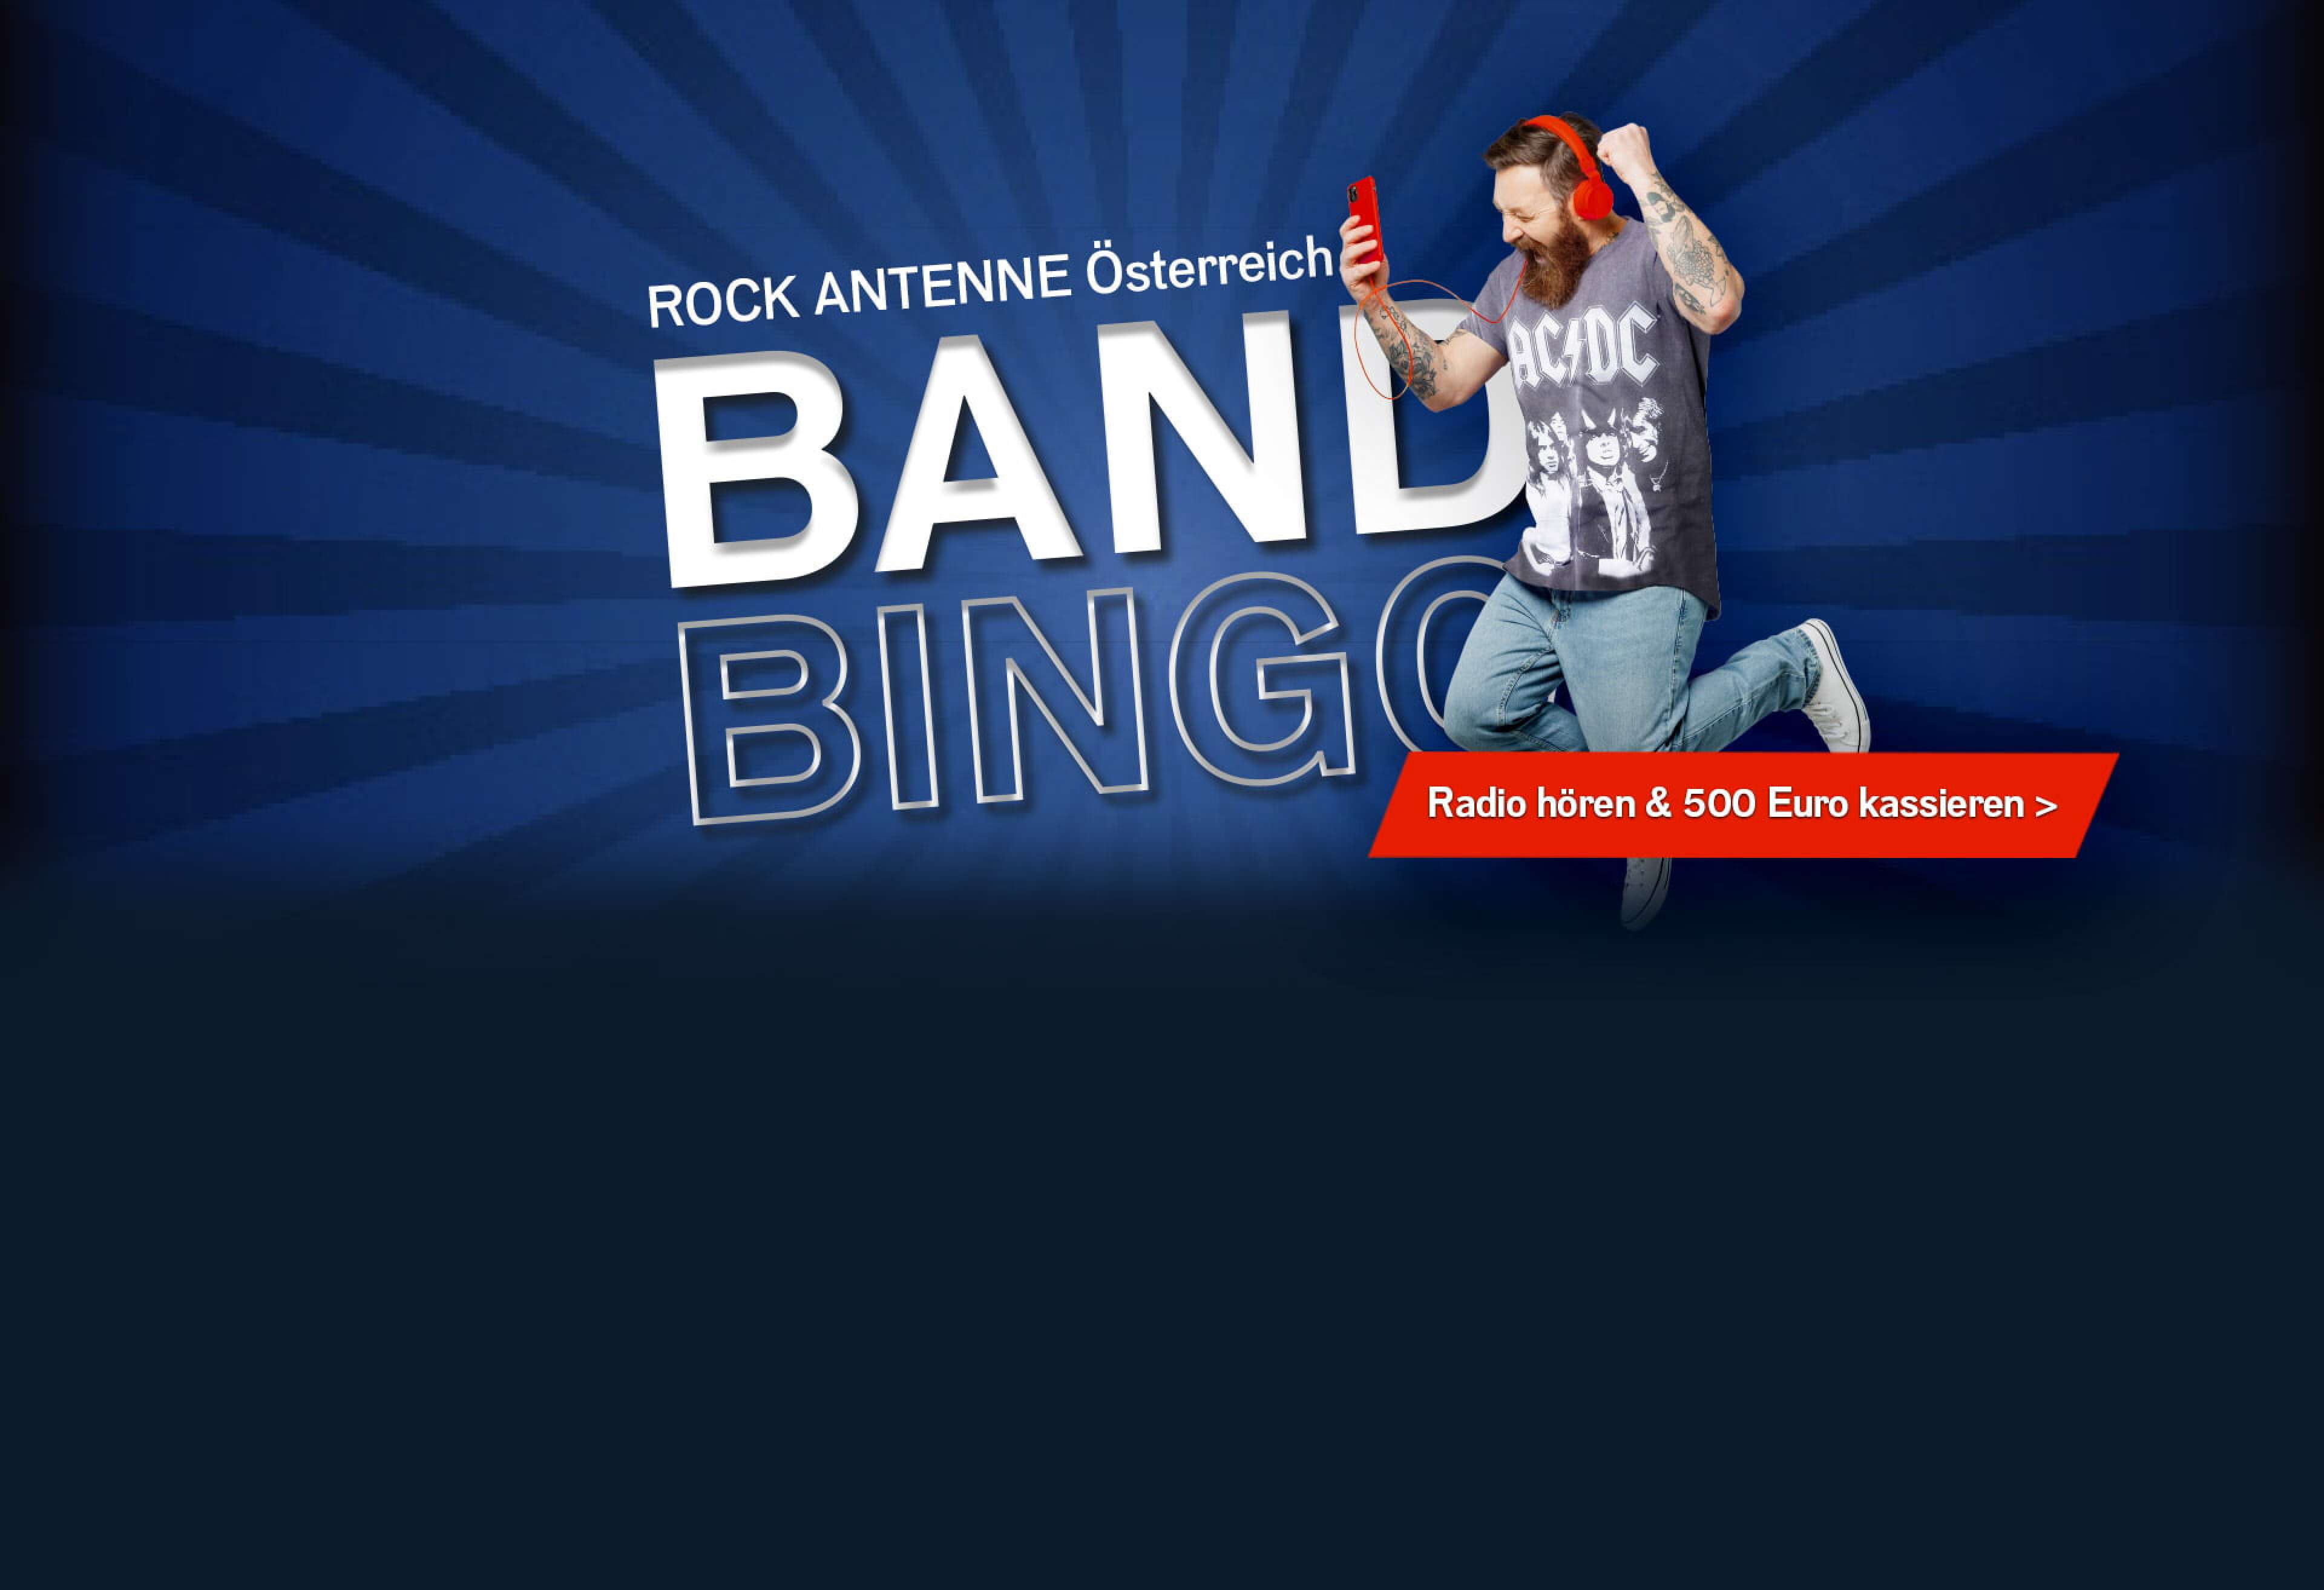 Ein jubelnder Mann mit AC/DC Shirt, Kopfhörern und Smartphone und dazu der Text "ROCK ANTENNE Österreich Band Bingo - Radio hören und 500 Euro kassieren"